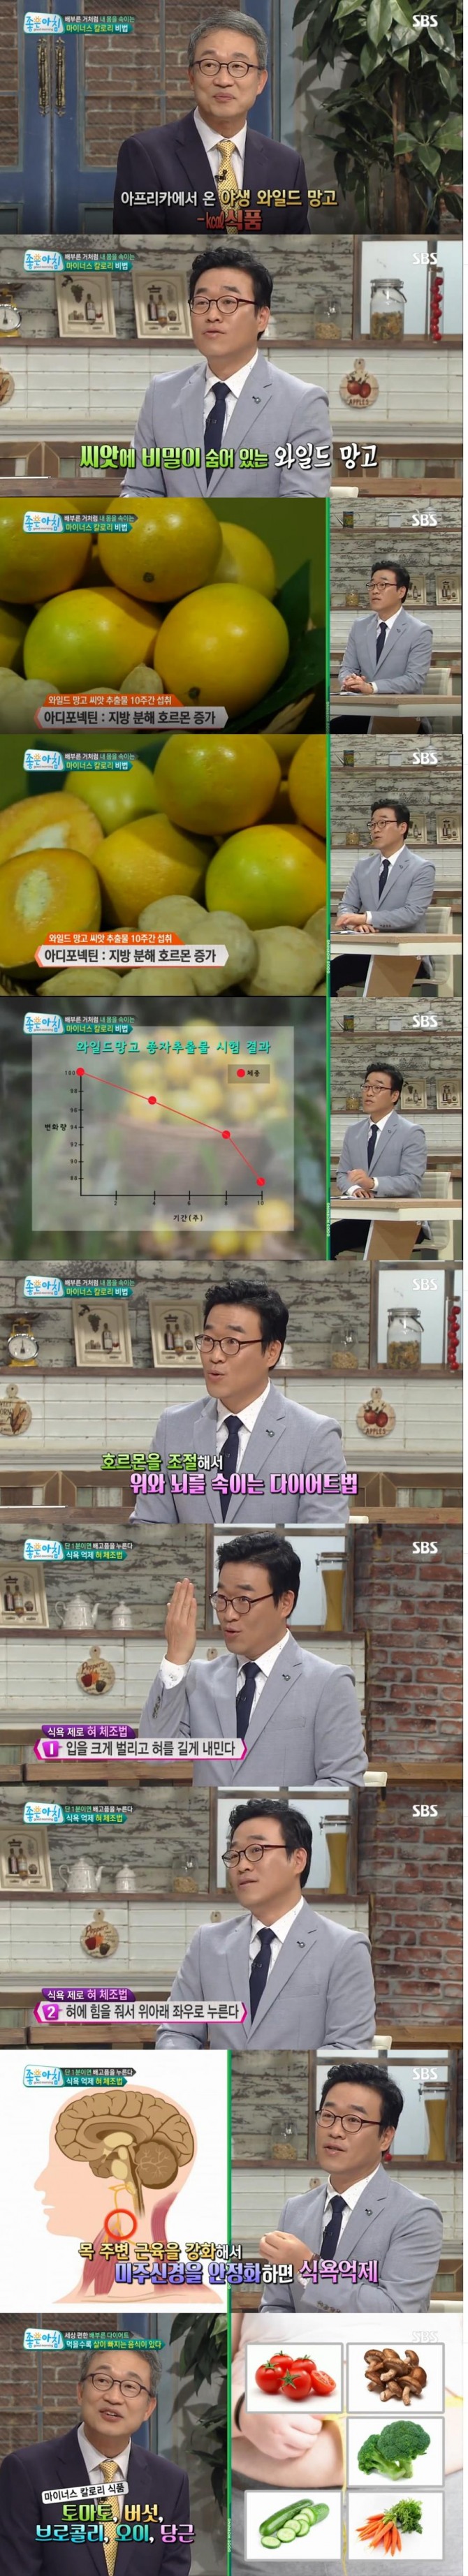 19일 오전 방송된 SBS '좋은 아침'에서는 마이너스 칼로리 식품으로 각광받는 와일드 망고 씨앗에 함유된 다이어트 효능이 소개됐다./사진=SBS방송 캡처